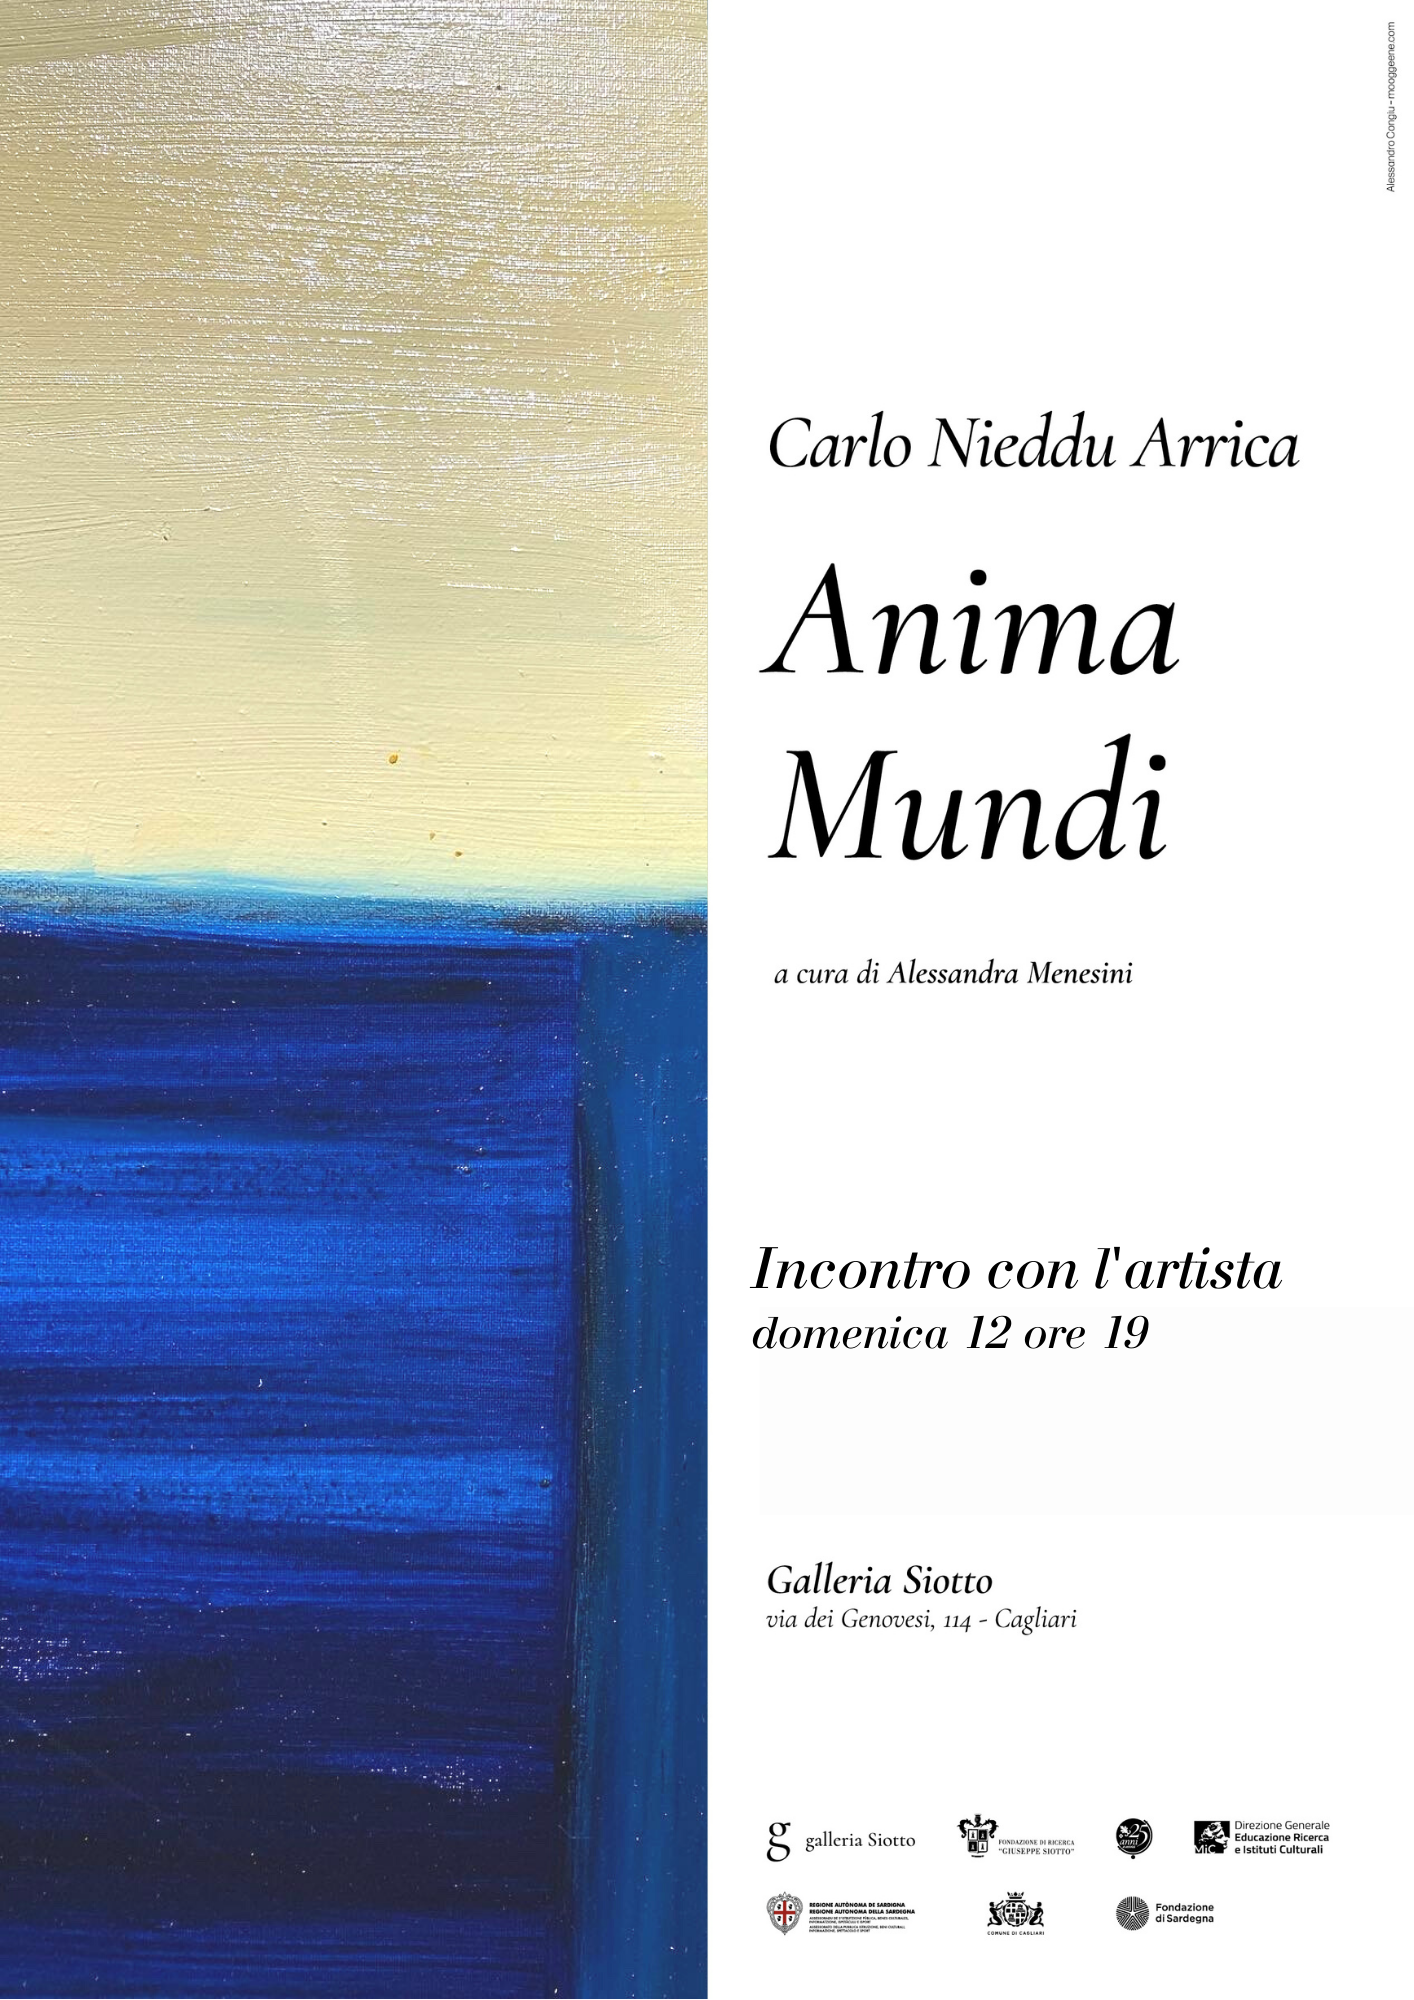 Al momento stai visualizzando Anima Mundi – incontro con l’artista Carlo Nieddu Arrica